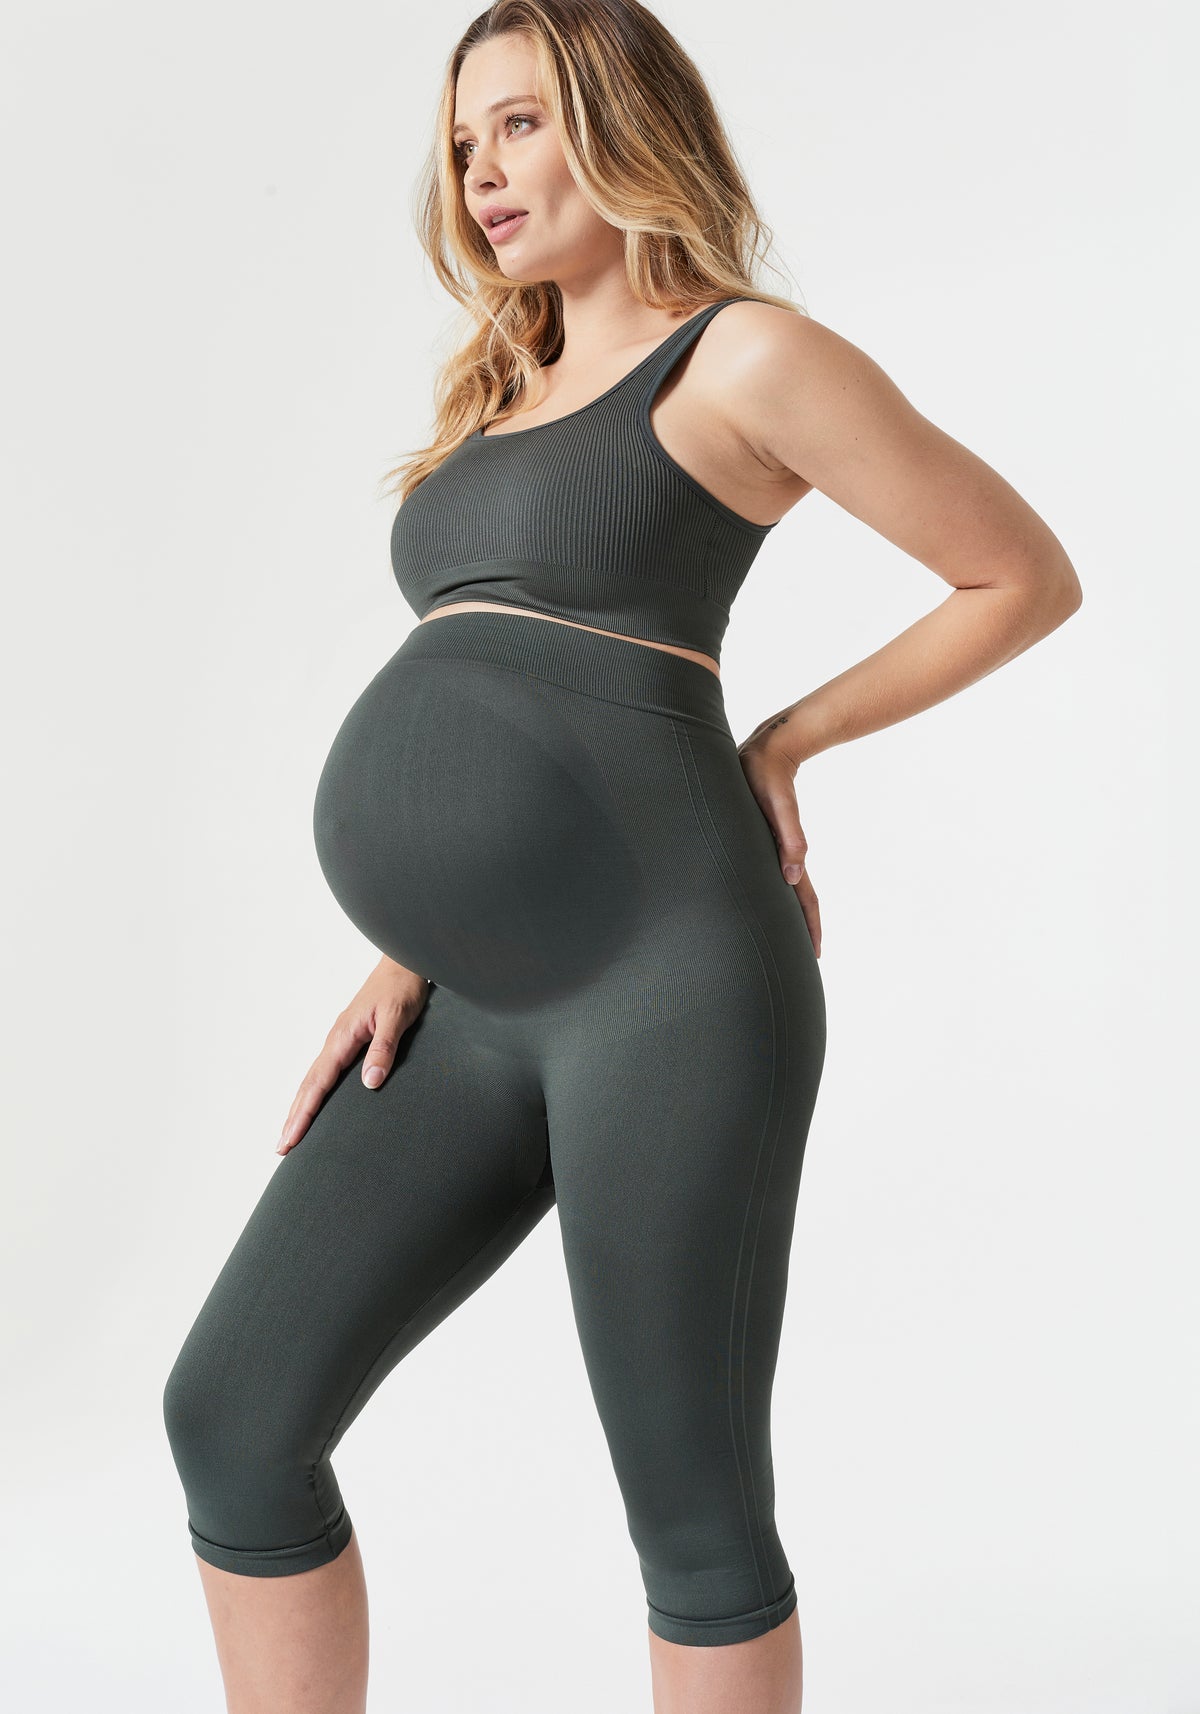 Designer Maternity Leggings: Under Belly & Over the Belly